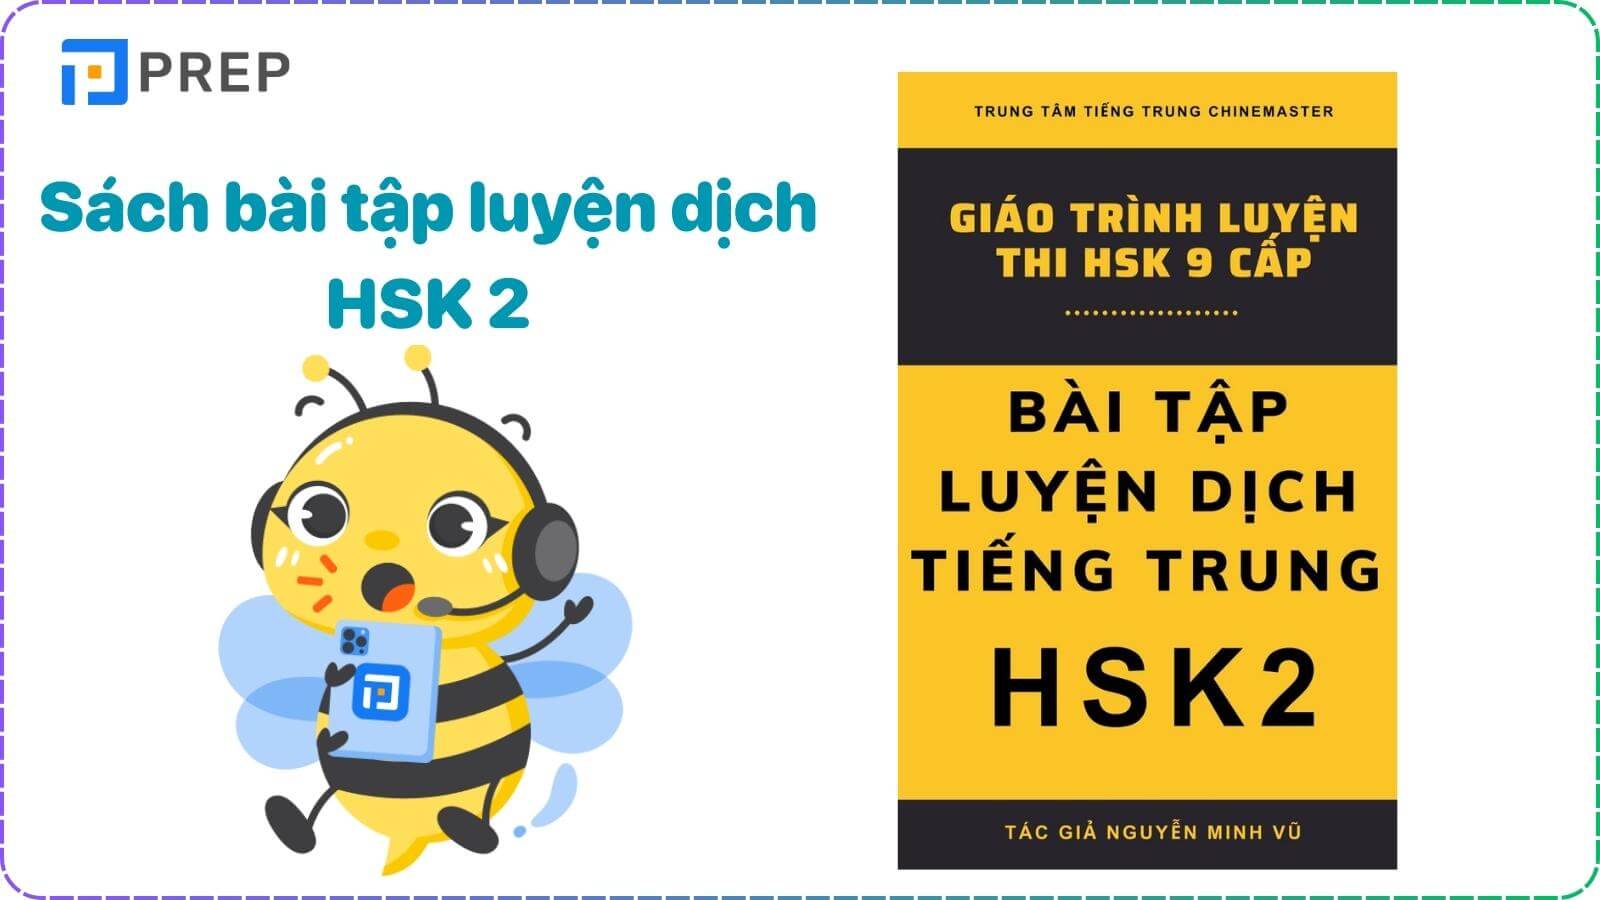 Sách bài tập luyện dịch HSK 2 